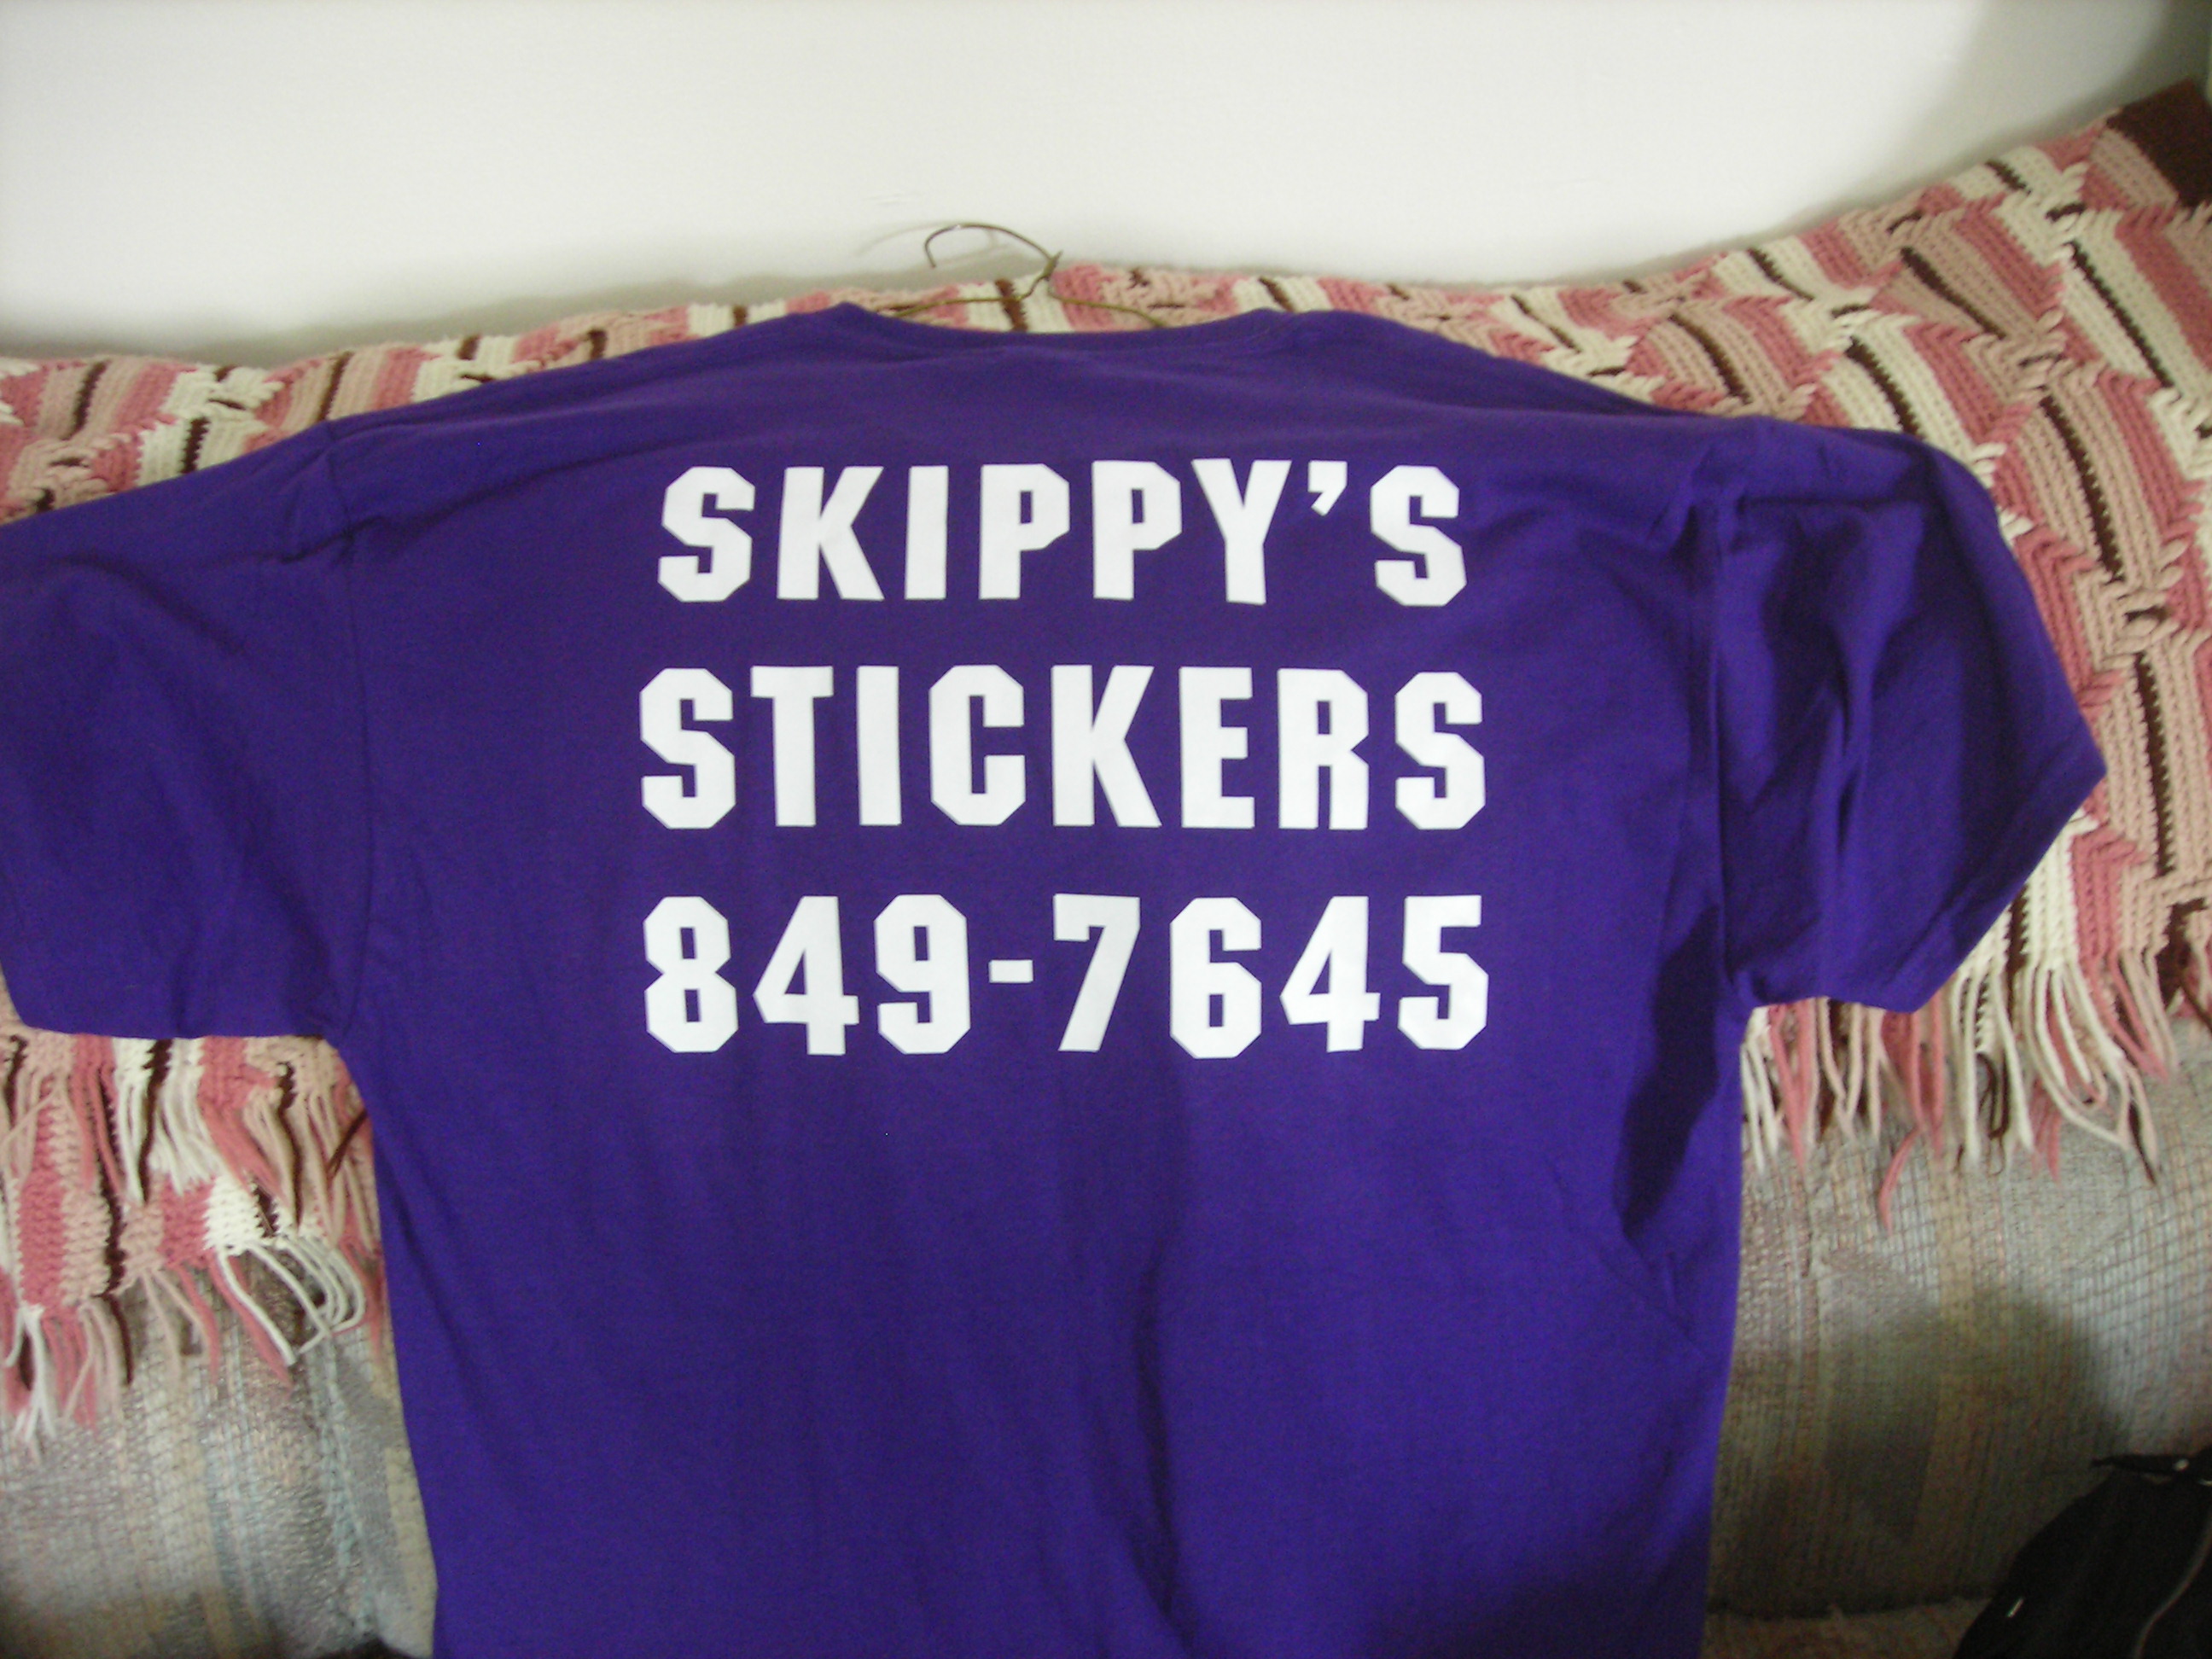 Thanks Skippy!